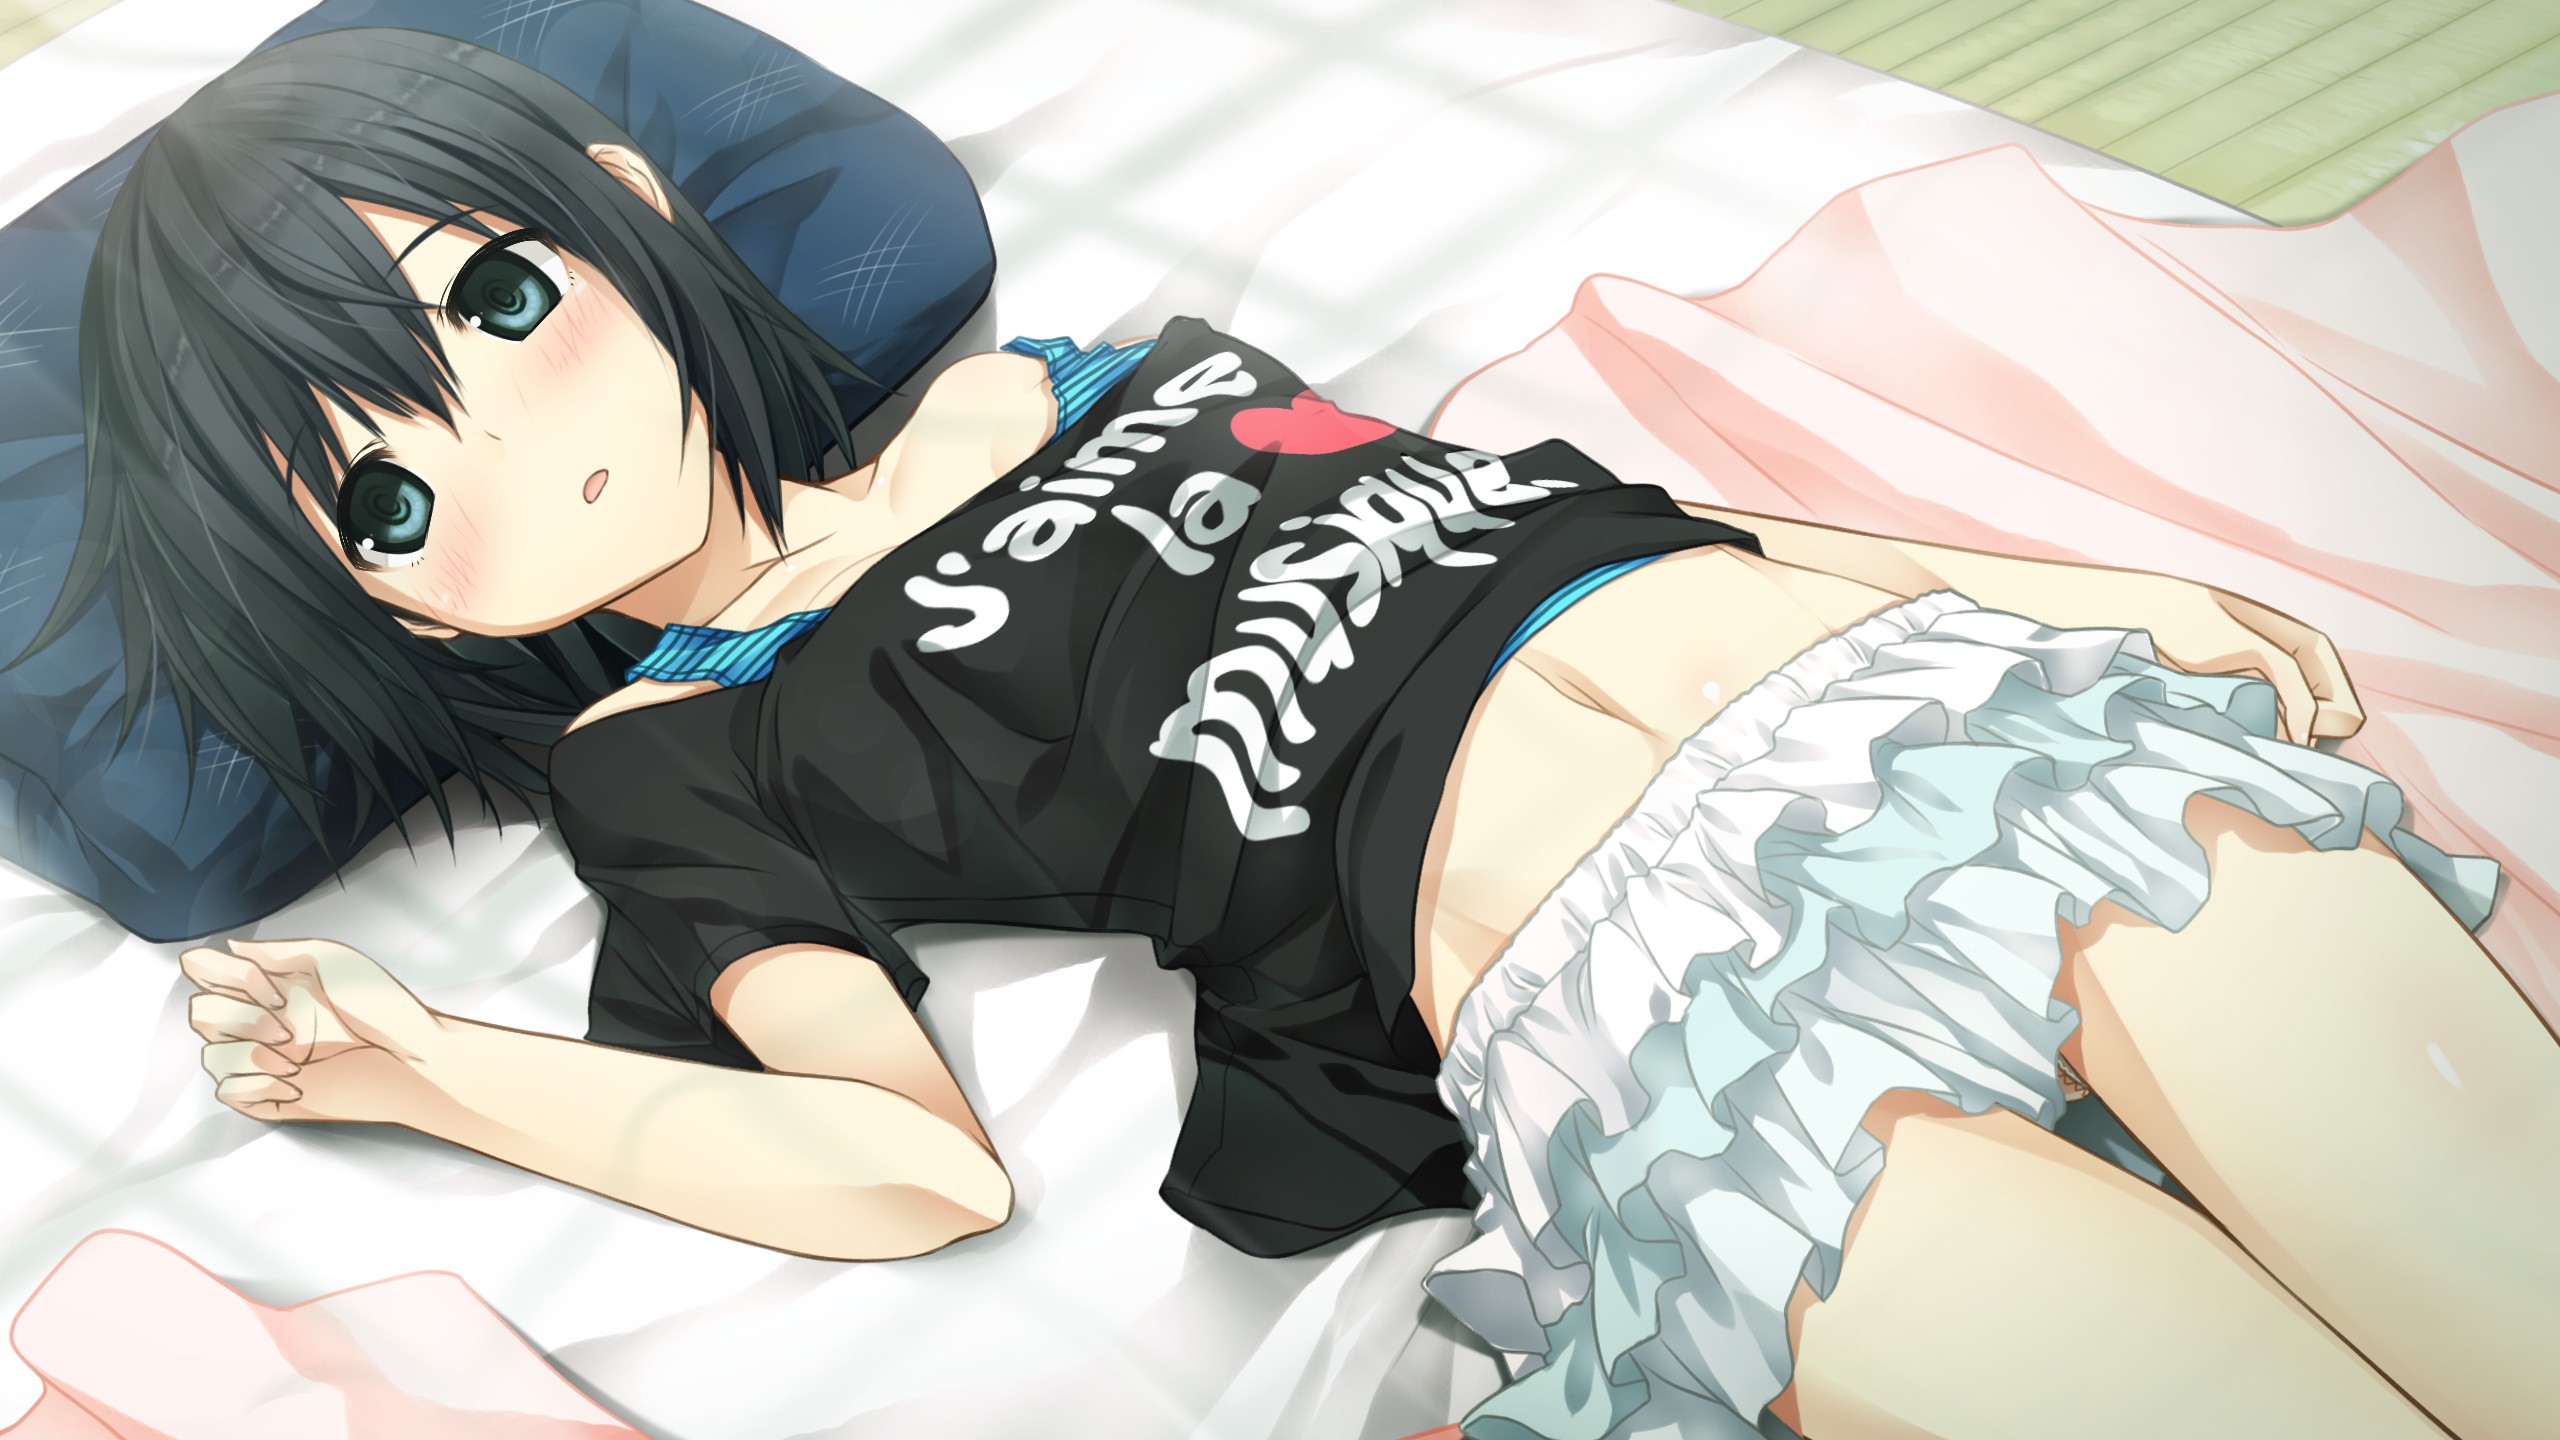 Anime 2560x1440 anime Monobeno Alishima Alice anime girls Cura blushing in bed short hair black hair T-shirt miniskirt lying on back